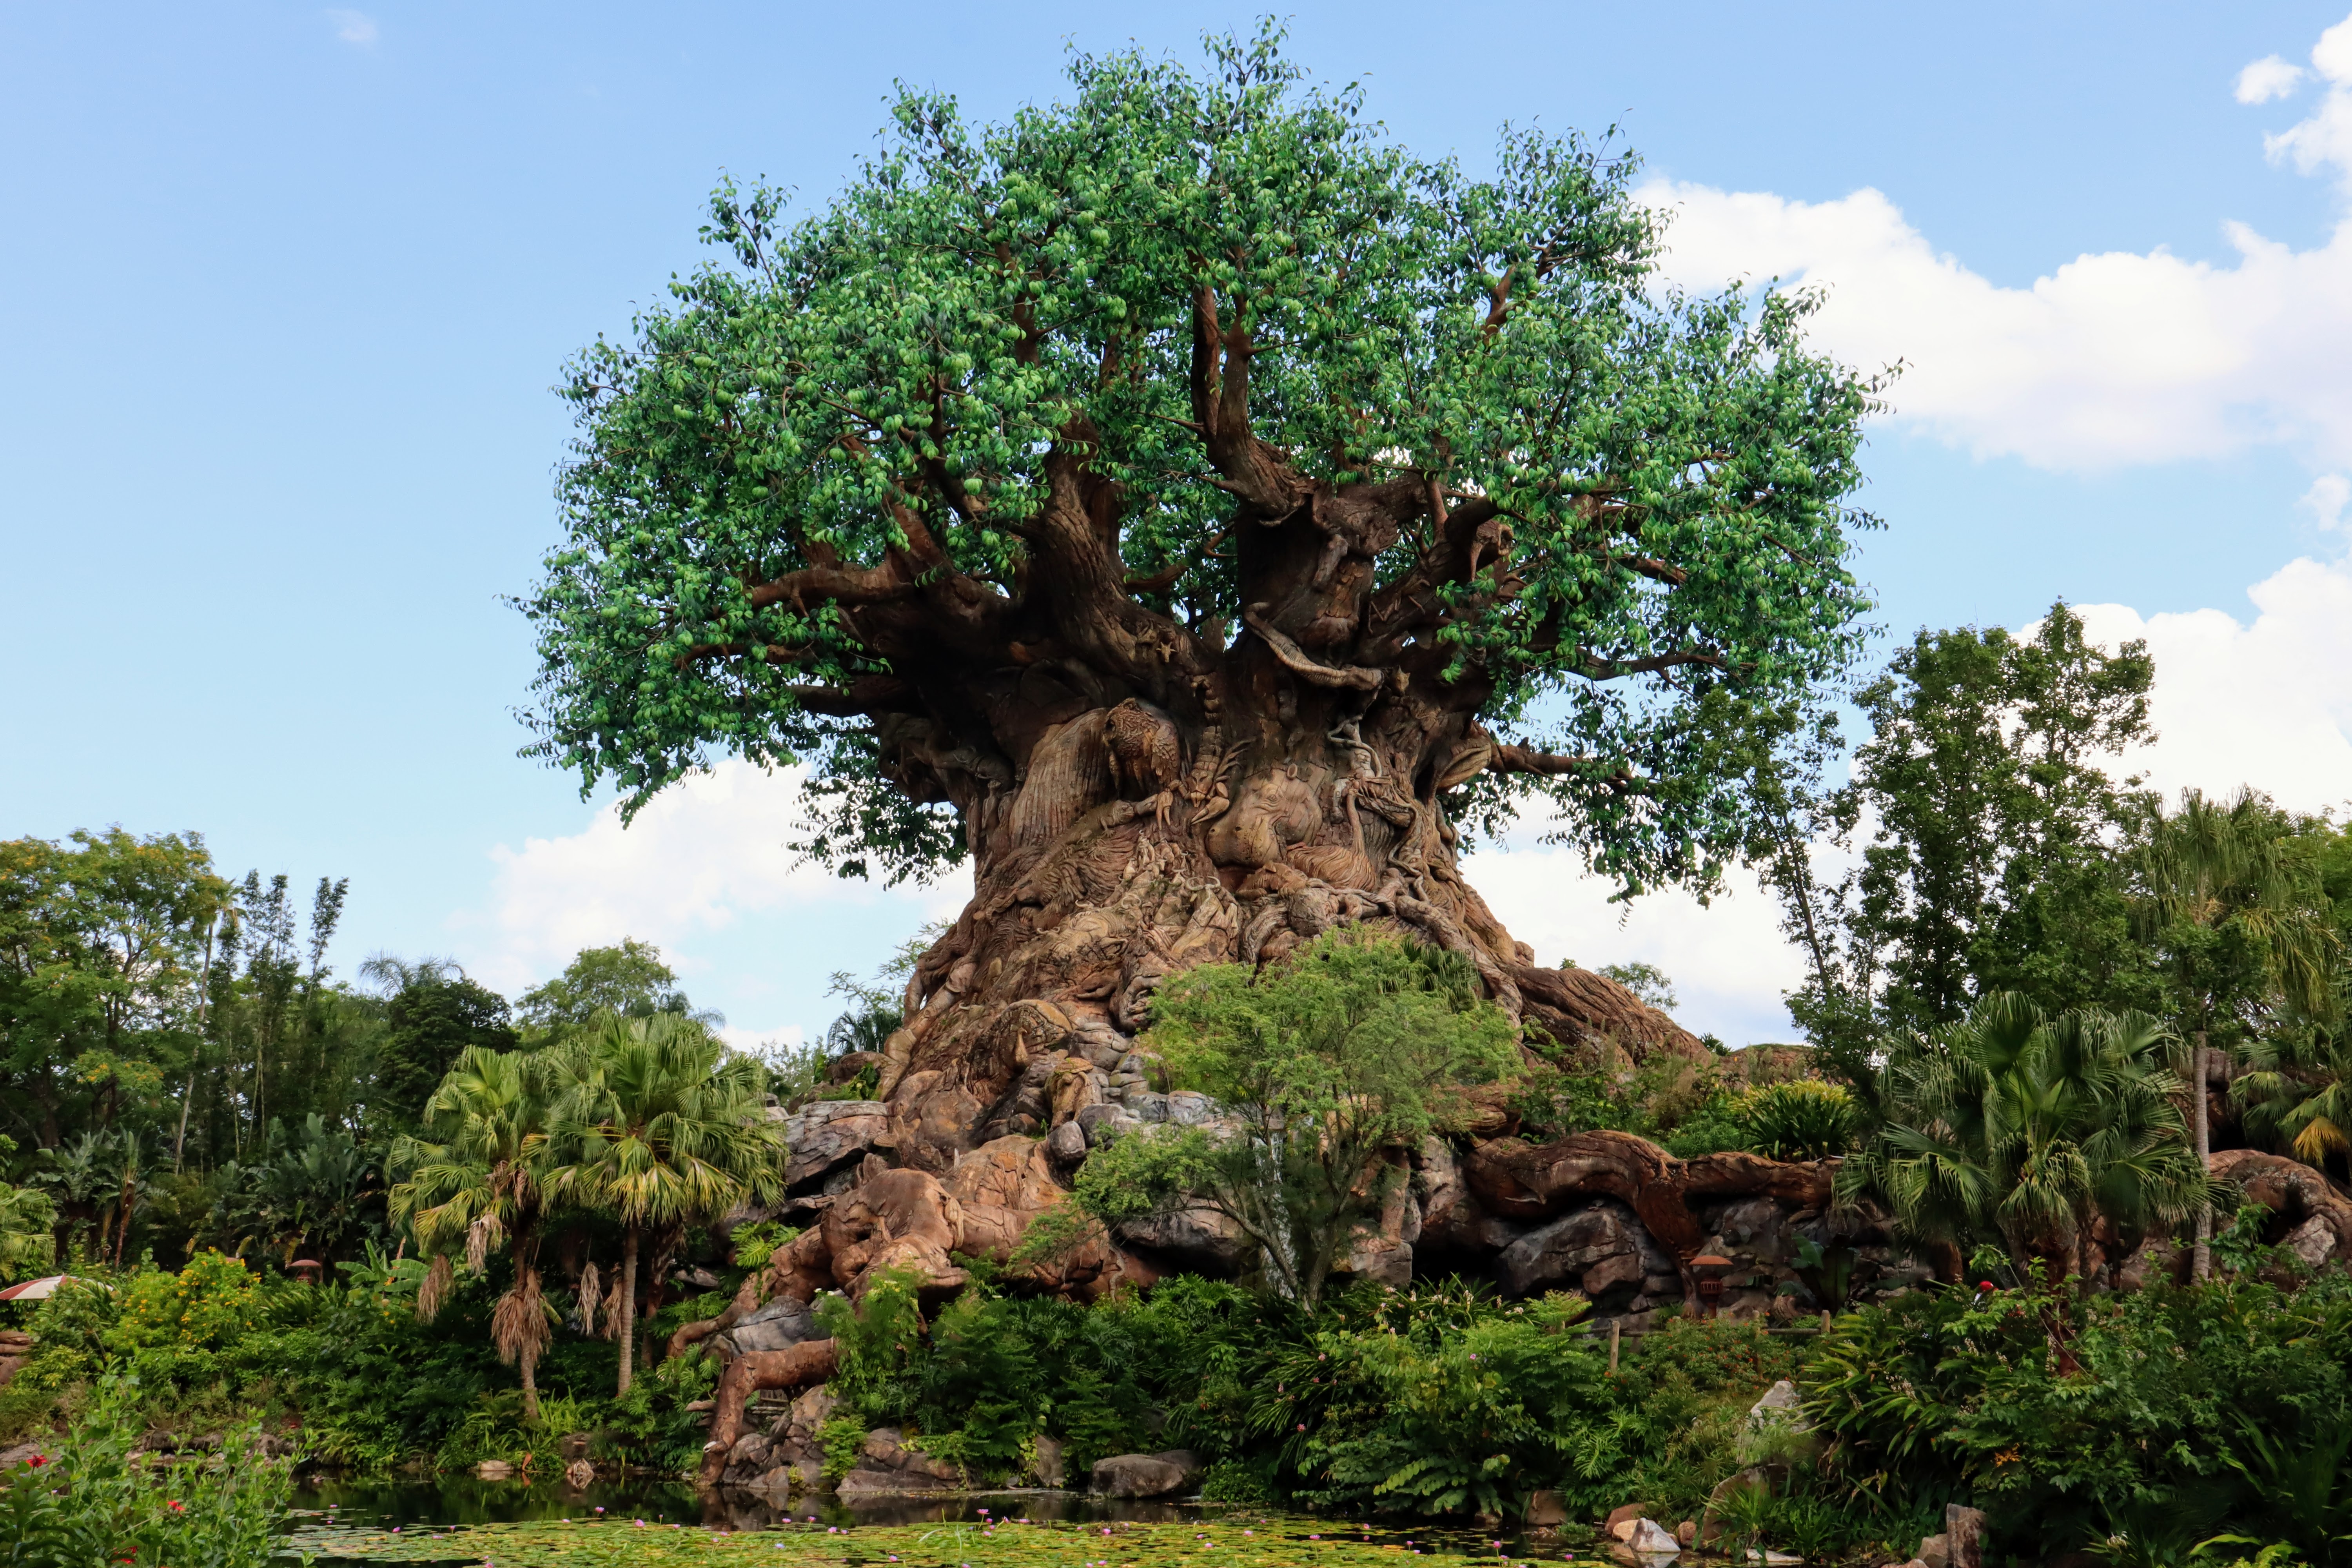 Animal Kingdom - Tree of Life